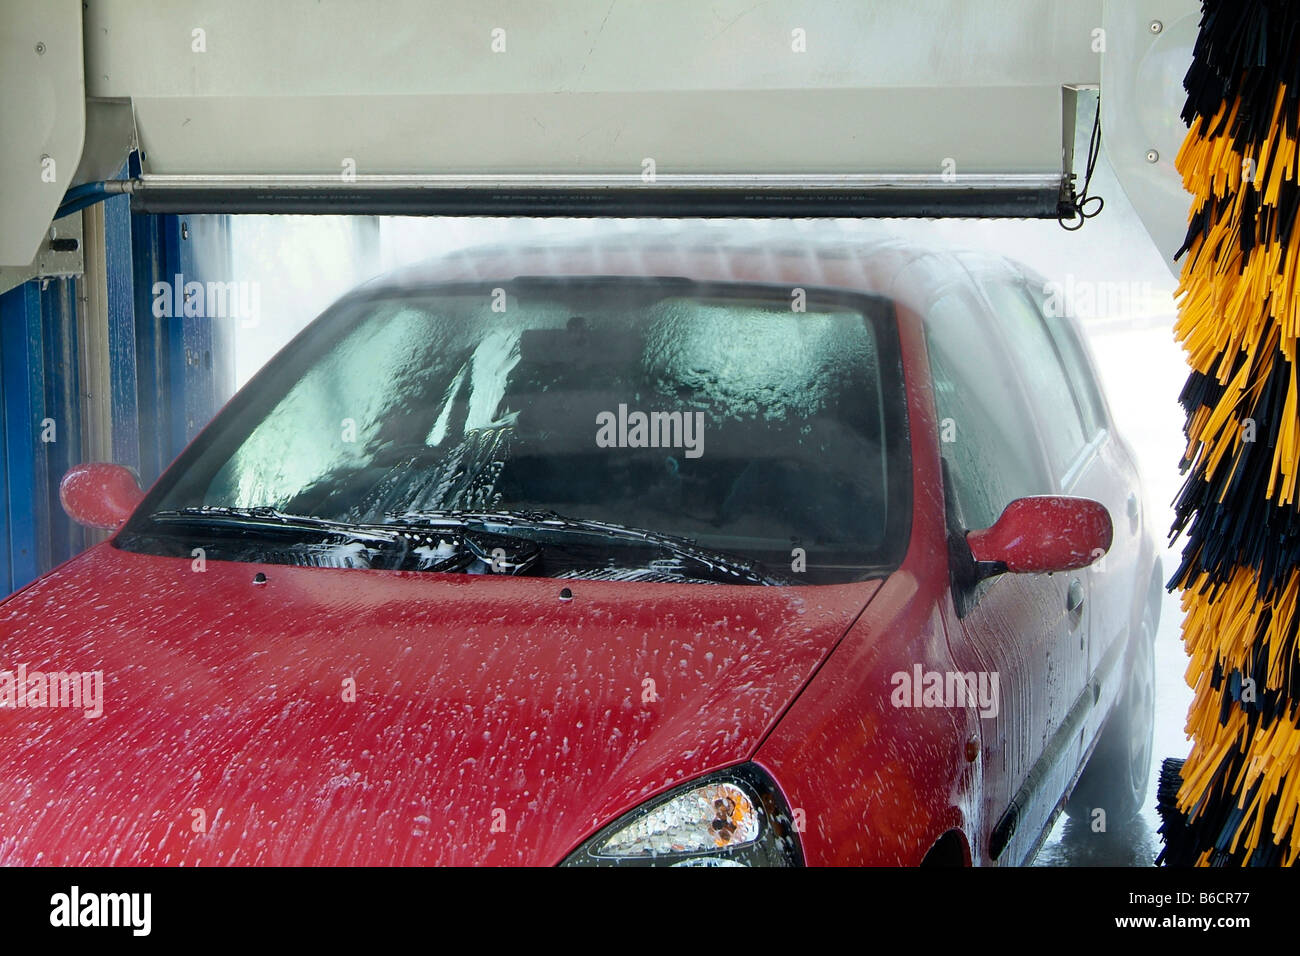 Lavage de voiture haut de la barre d'épandage en action Banque D'Images